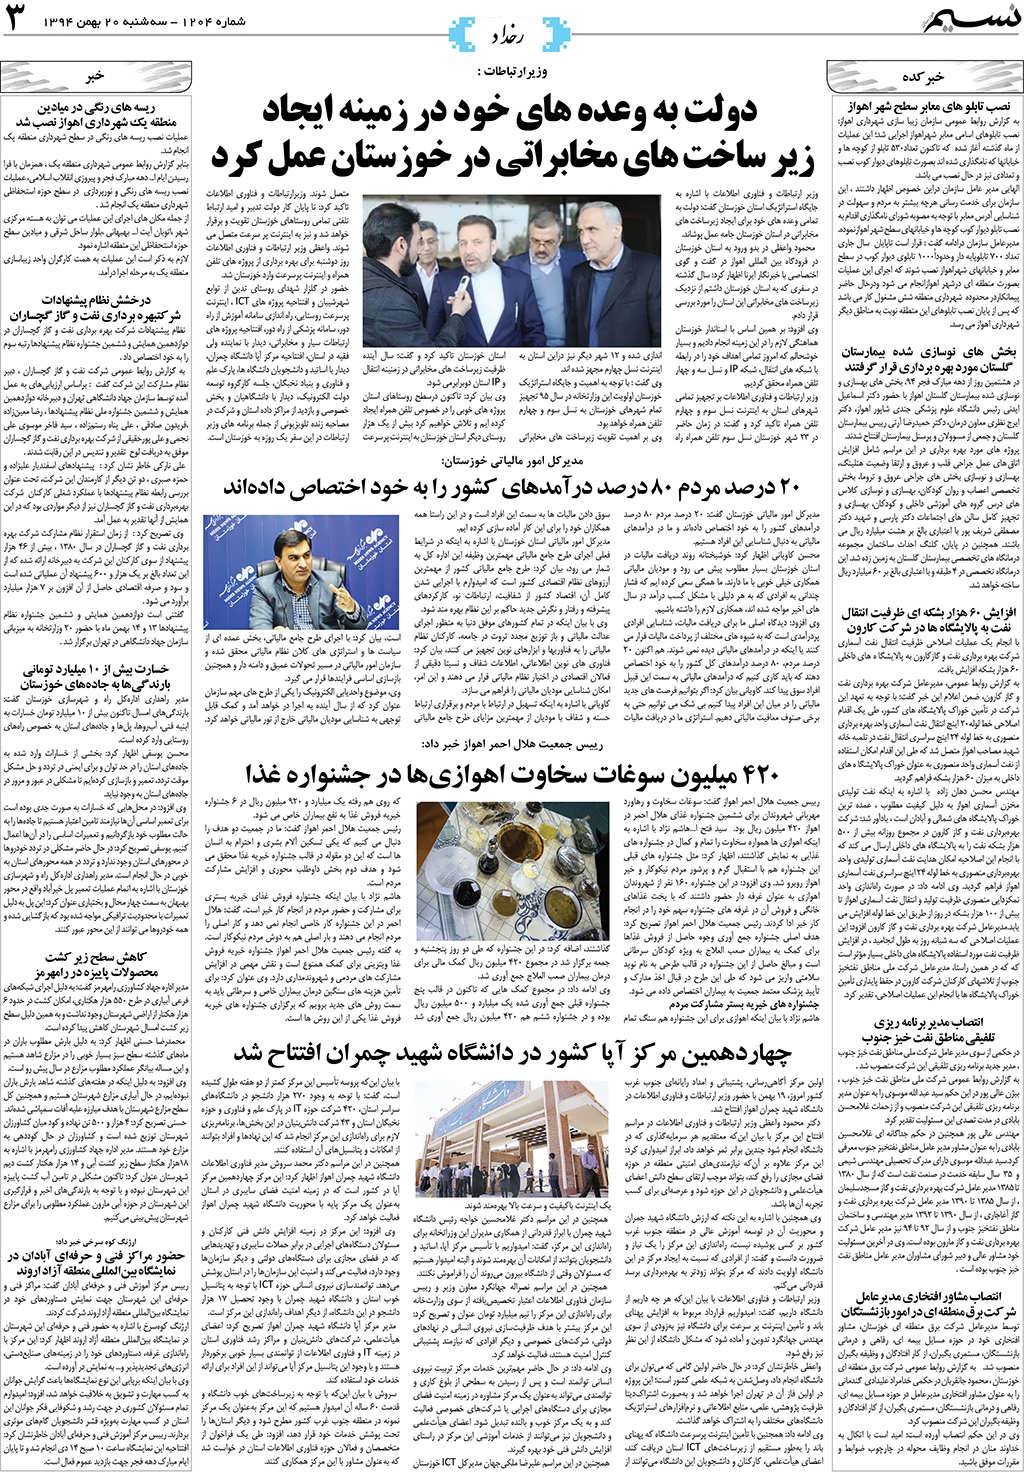 صفحه رخداد روزنامه نسیم شماره 1204